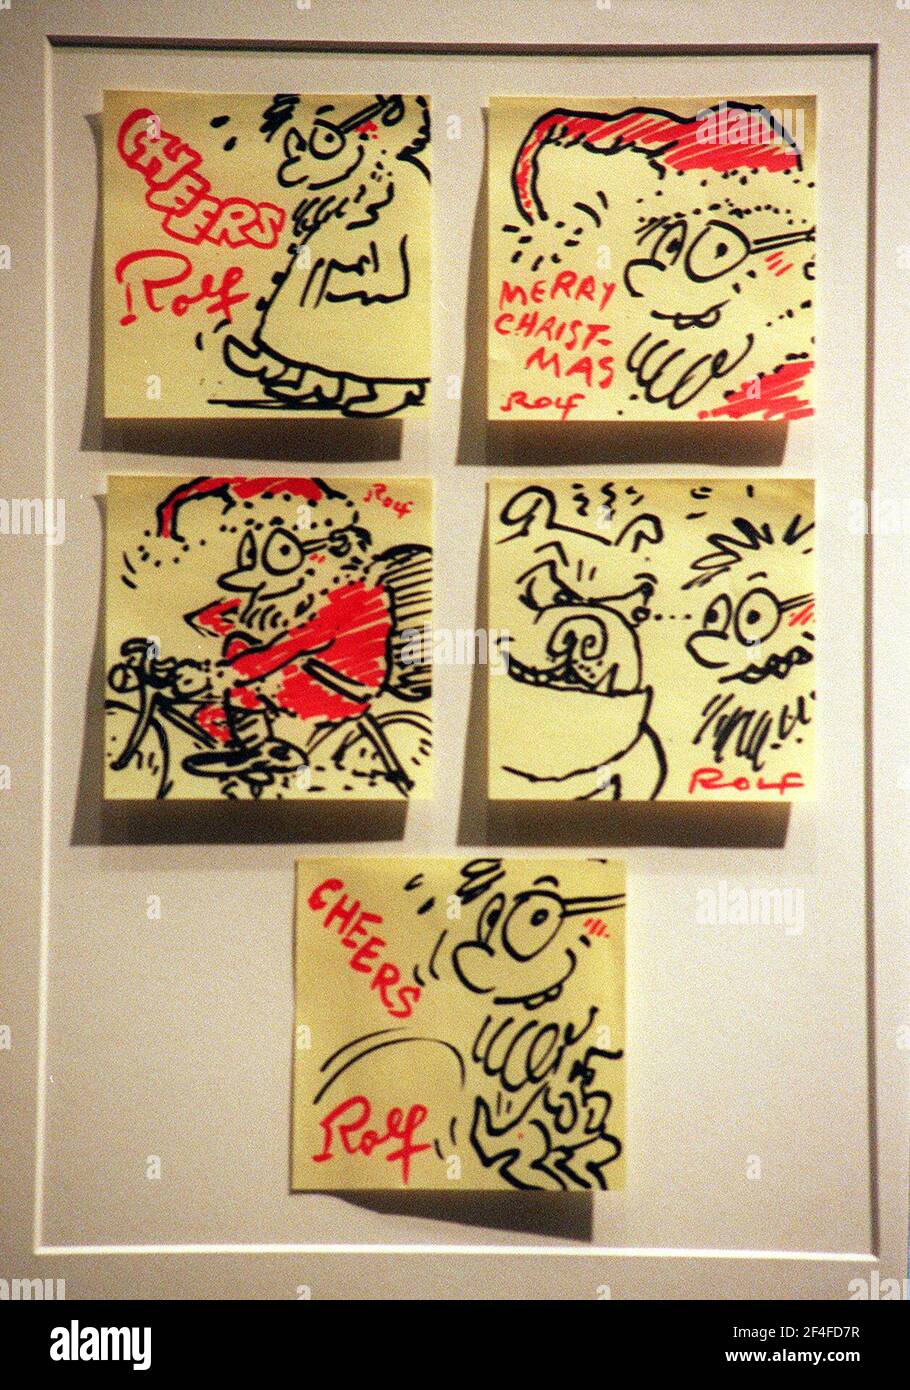 Miniatur-Meisterwerke auf Post-it-Notizen auf der Ausstellung in der Royal Academy. Diese besonderen Kritzeleien sind vom Künstler Rolf Harris,4-12-2000 Foto Tom Pilston Stockfoto